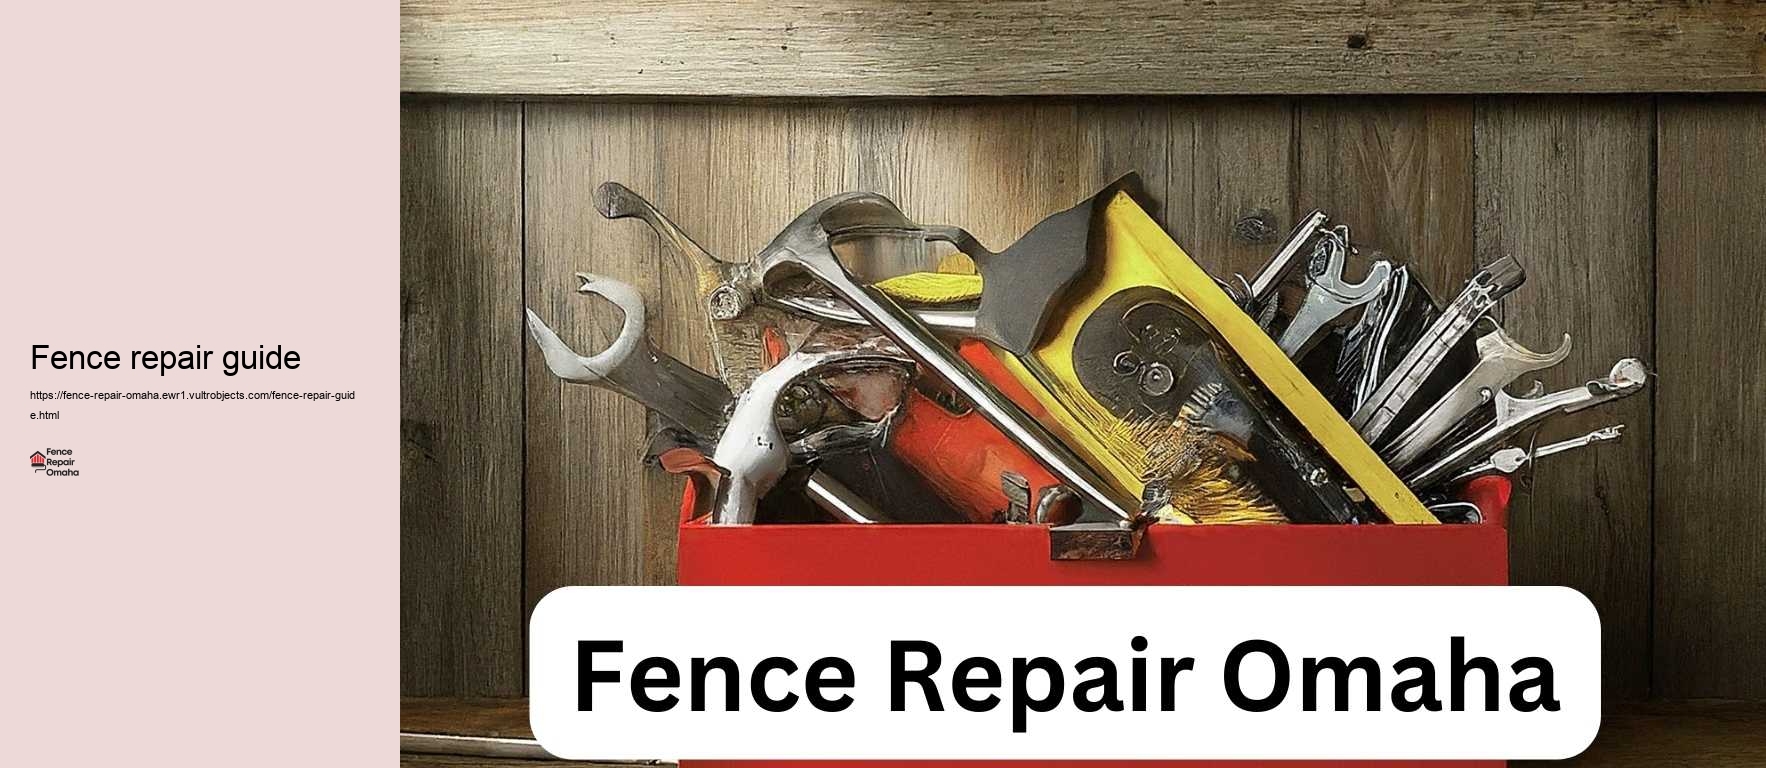 Fence repair guide